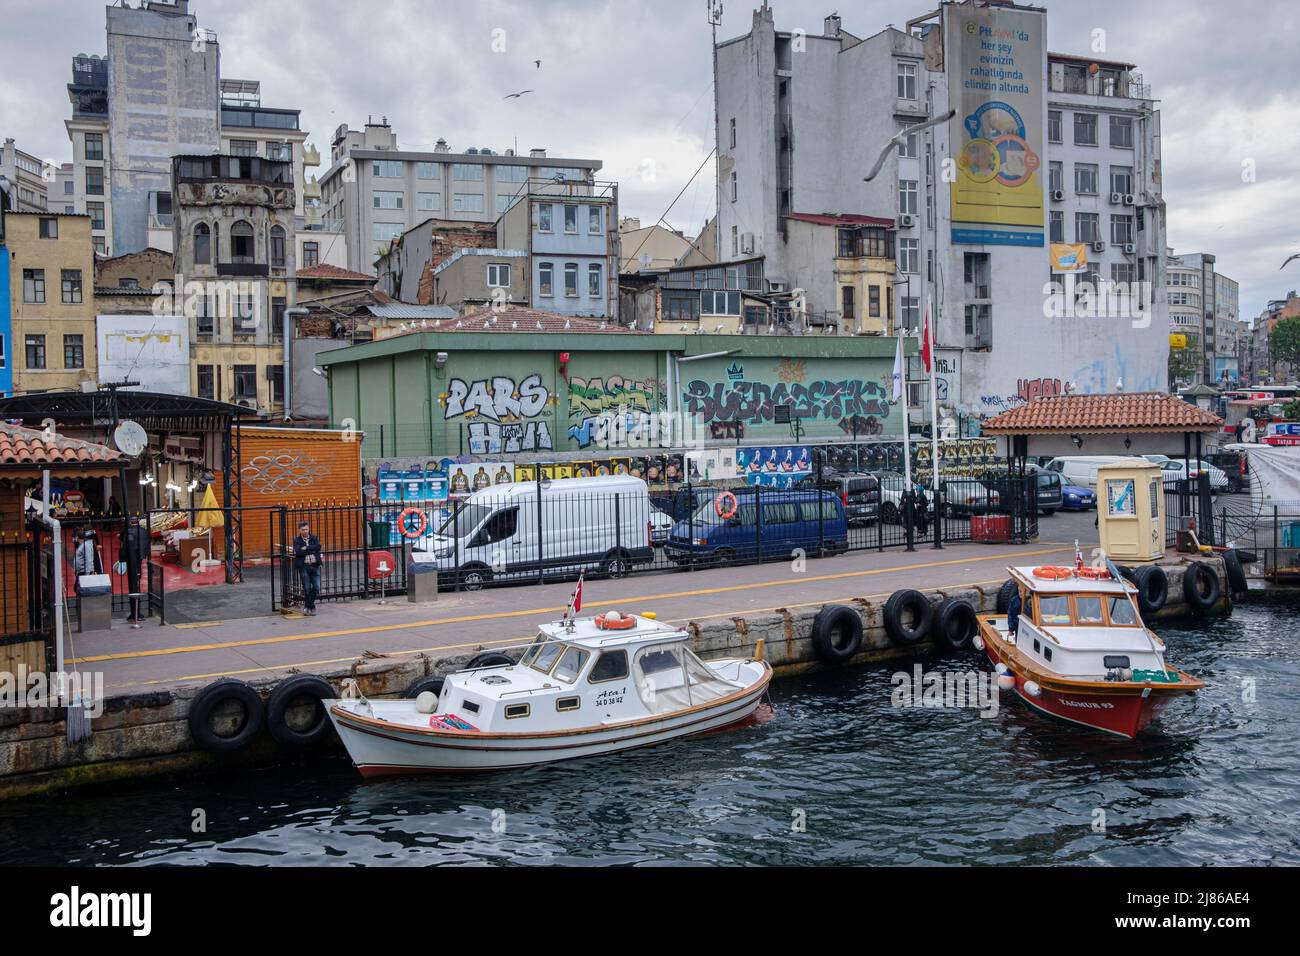 Los barcos de taxi están amarrados en los muelles del distrito de Galata. El transporte marítimo en ferry es una especificidad de Estambul. A pesar del túnel más profundo del mundo bajo el Bósforo para el metro y de la inauguración del nuevo puente Canakkale 1915 en marzo de 2022, la población y el alcalde de Estambul recientemente elegido en 2019 están promoviendo el transporte marítimo para aliviar el tráfico por carretera y reducir las emisiones de CO2. Foto de stock